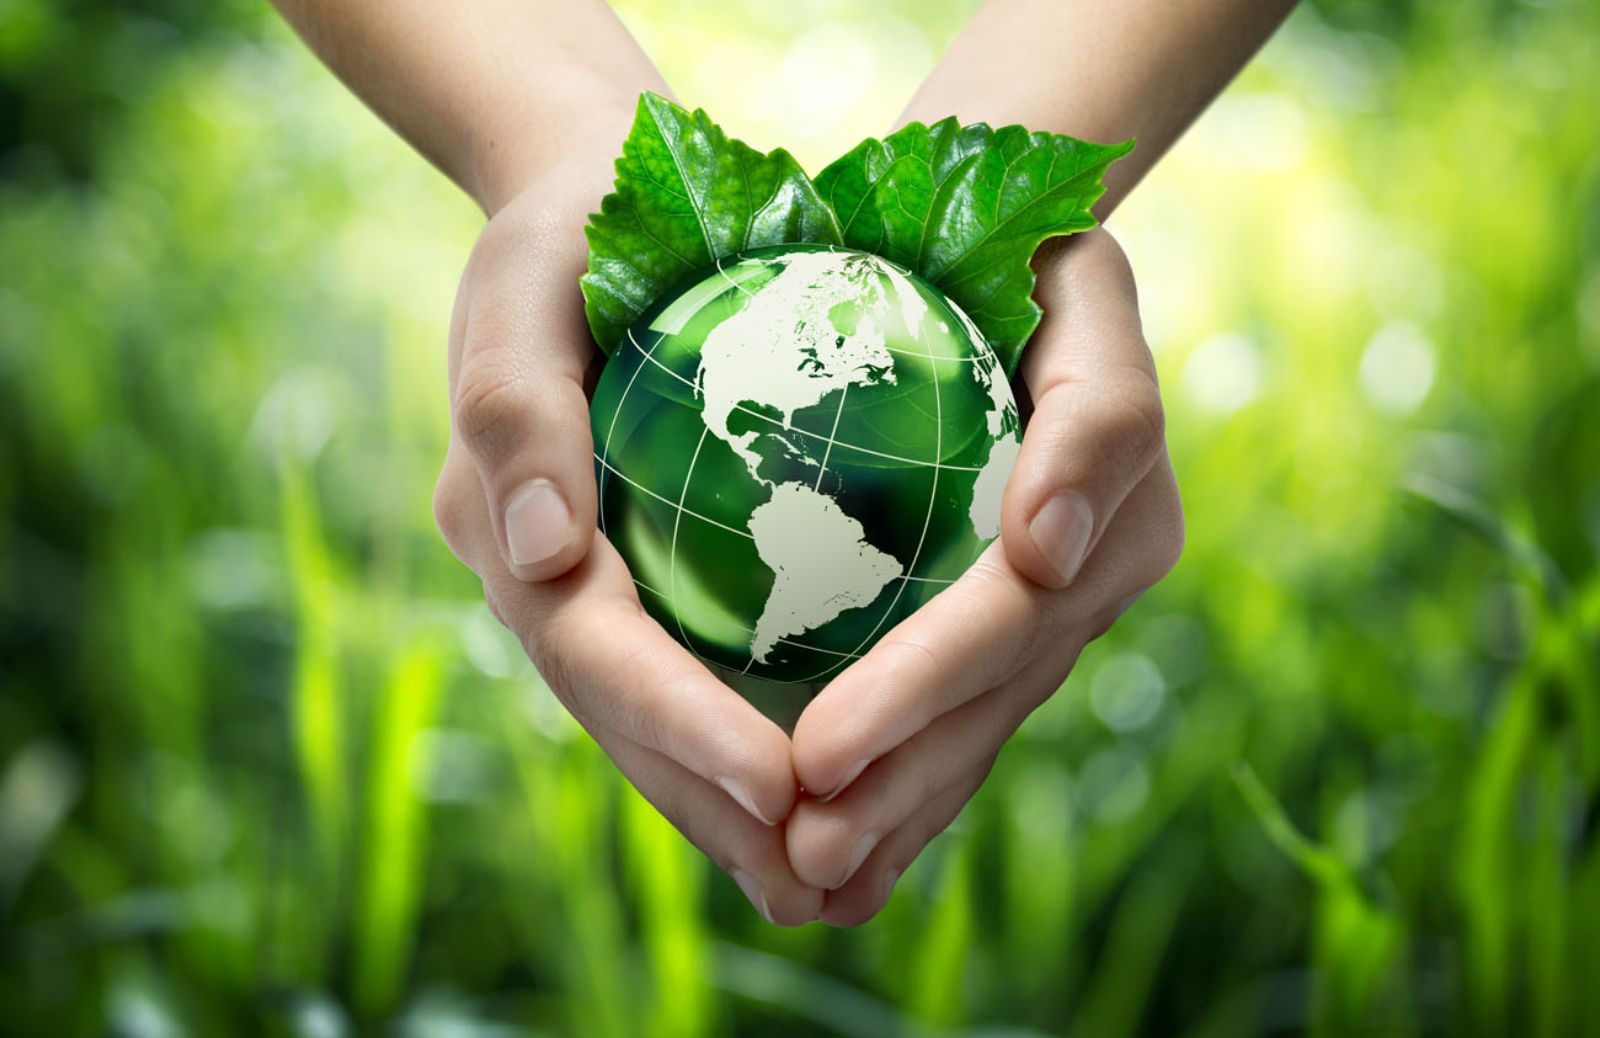 Torna l’Earth Day 2014 al grido “Cambiamo clima!” 